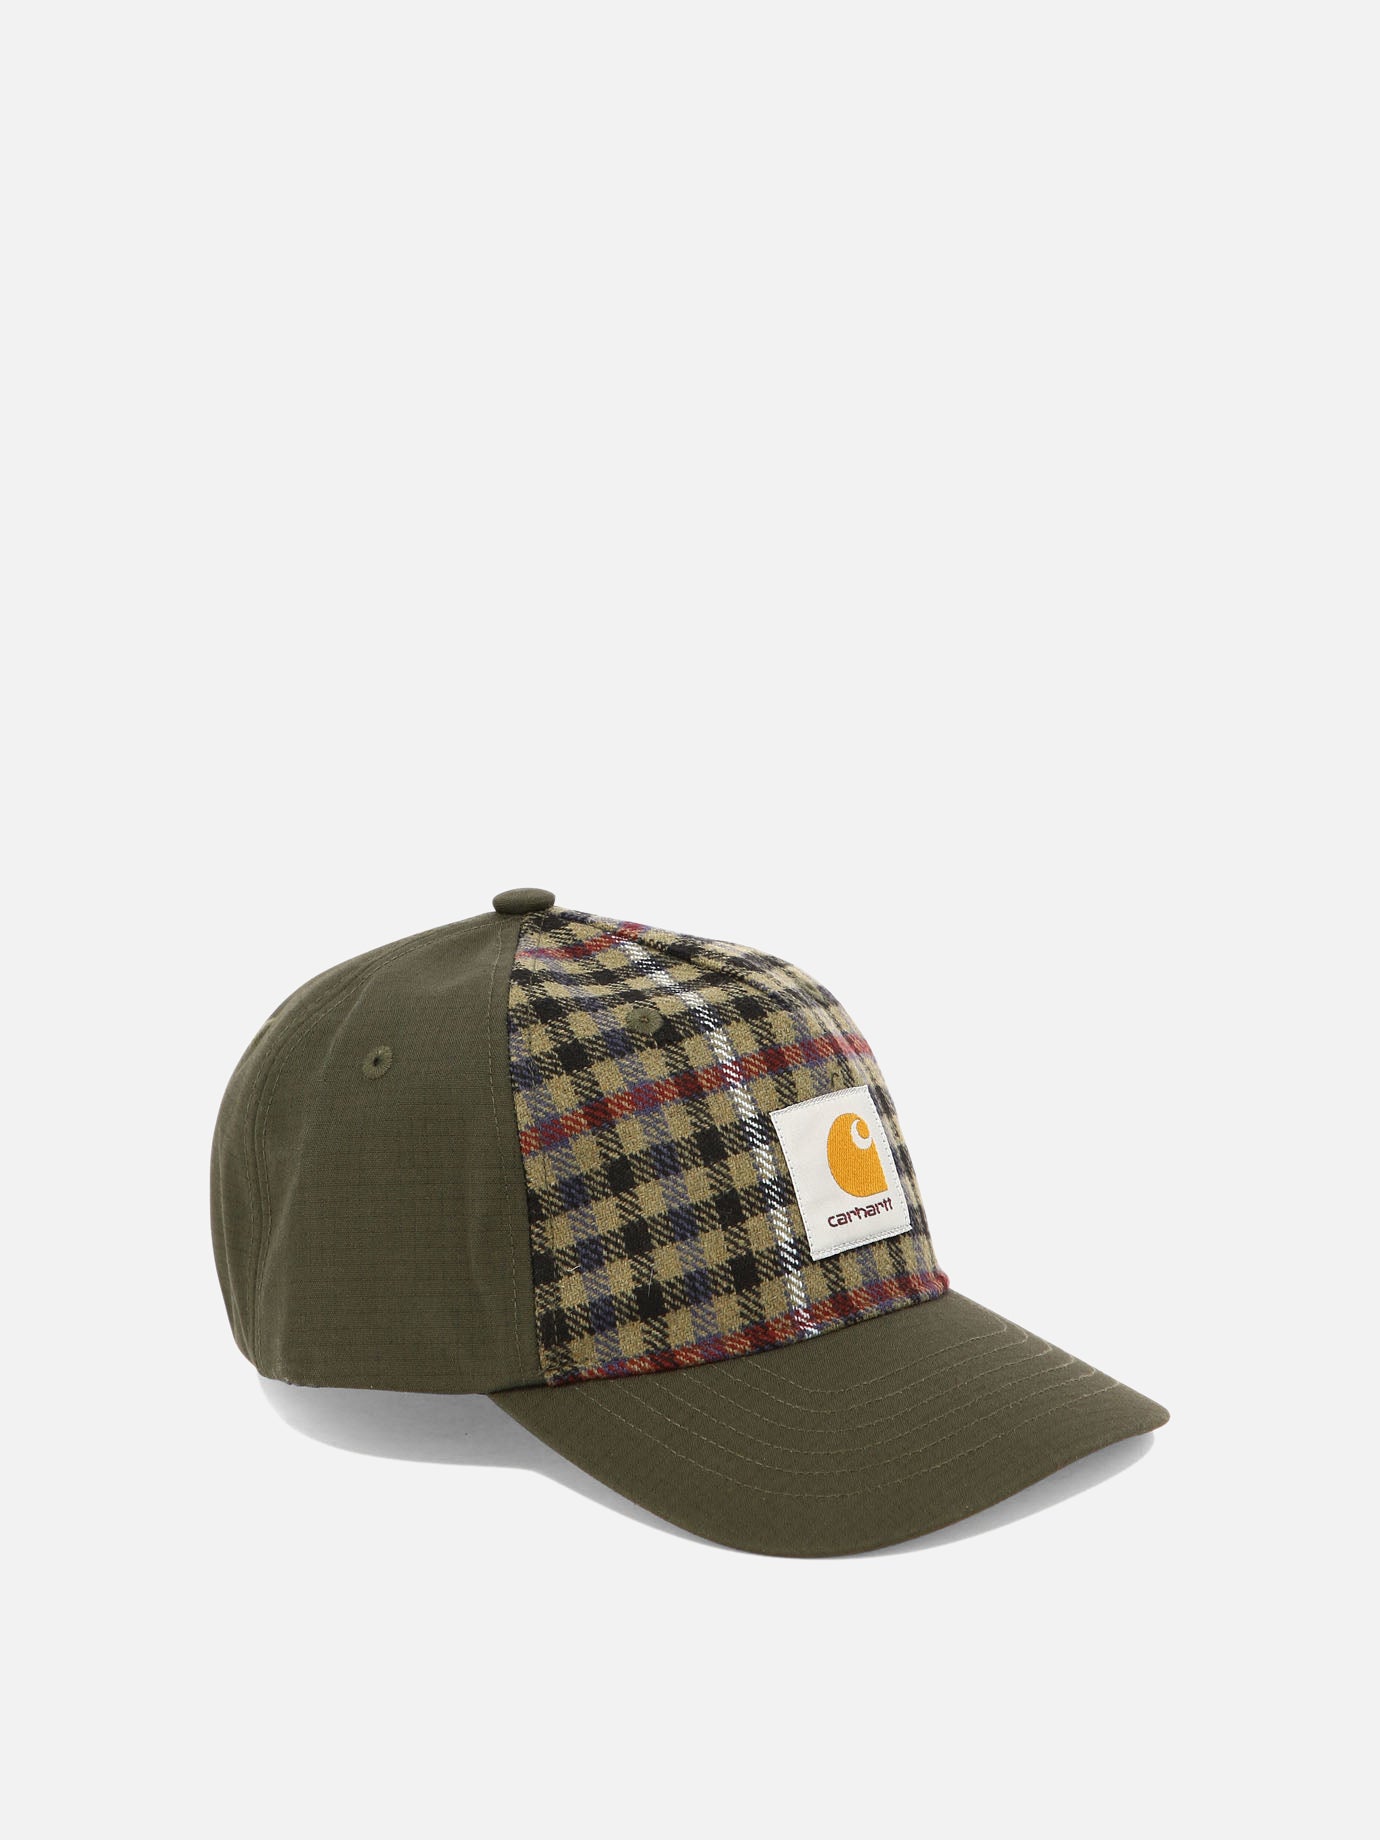 "Highbury" cap